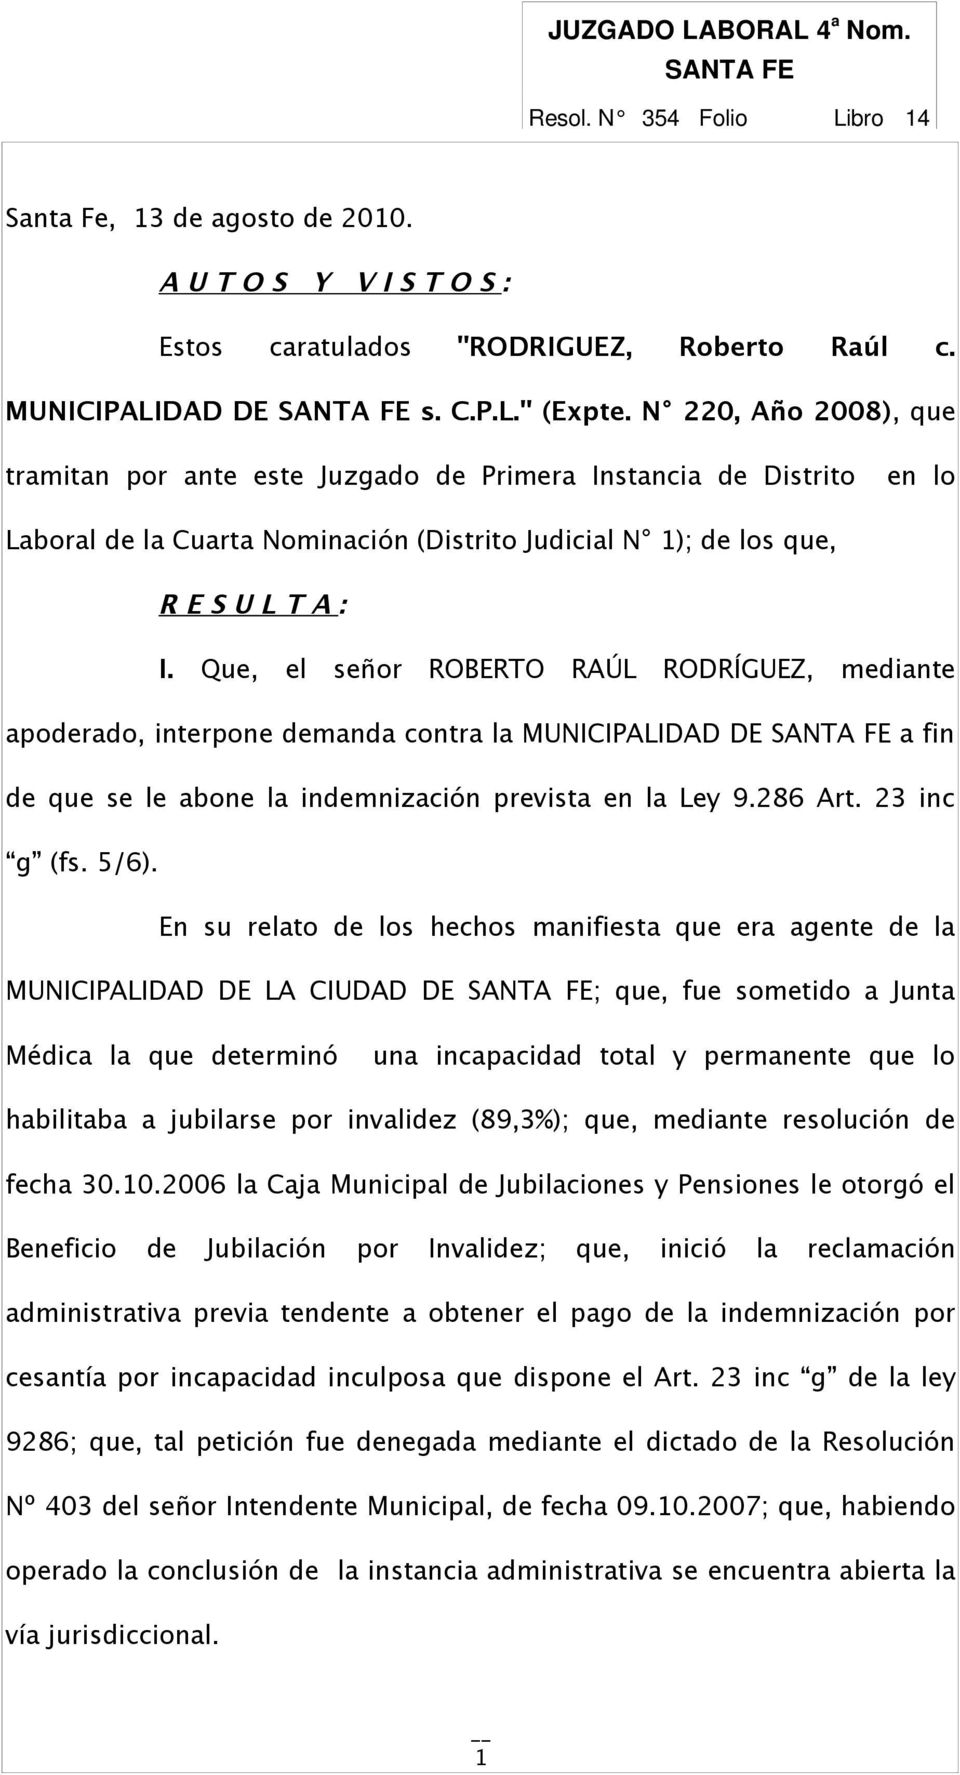 Que, el señor ROBERTO RAÚL RODRÍGUEZ, mediante apoderado, interpone demanda contra la MUNICIPALIDAD DE SANTA FE a fin de que se le abone la indemnización prevista en la Ley 9.286 Art. 23 inc g (fs.